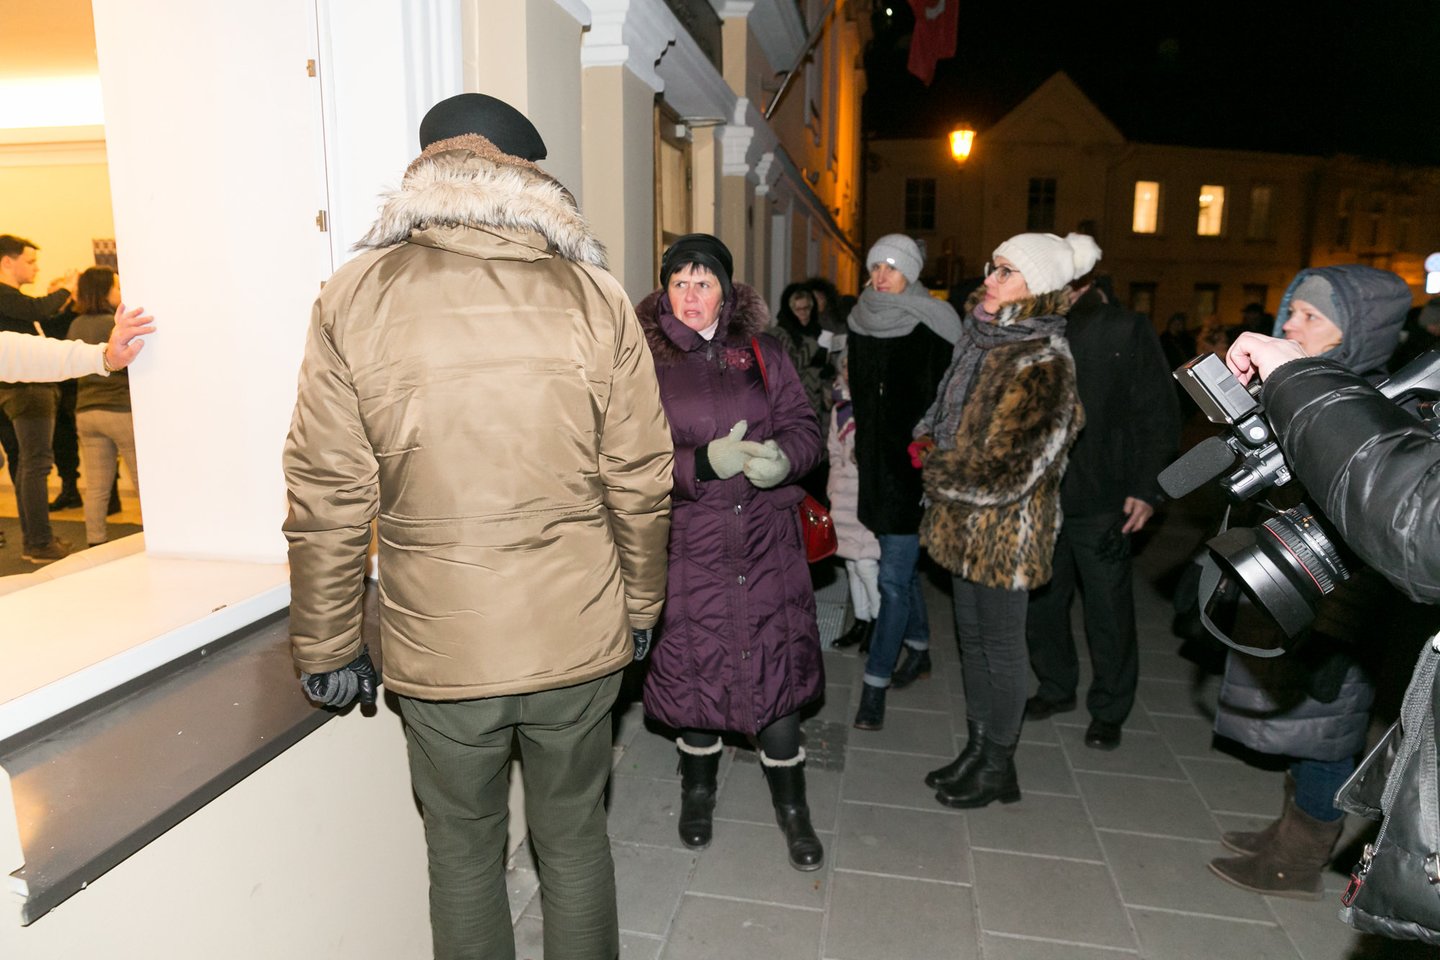  ŠMM likę mokytojai sulaukė ir palaikymo iš mitingo prie Seimo sugrįžusių pedagogų, kuriems teko stovėti lauke.<br> T.Bauro nuotr.